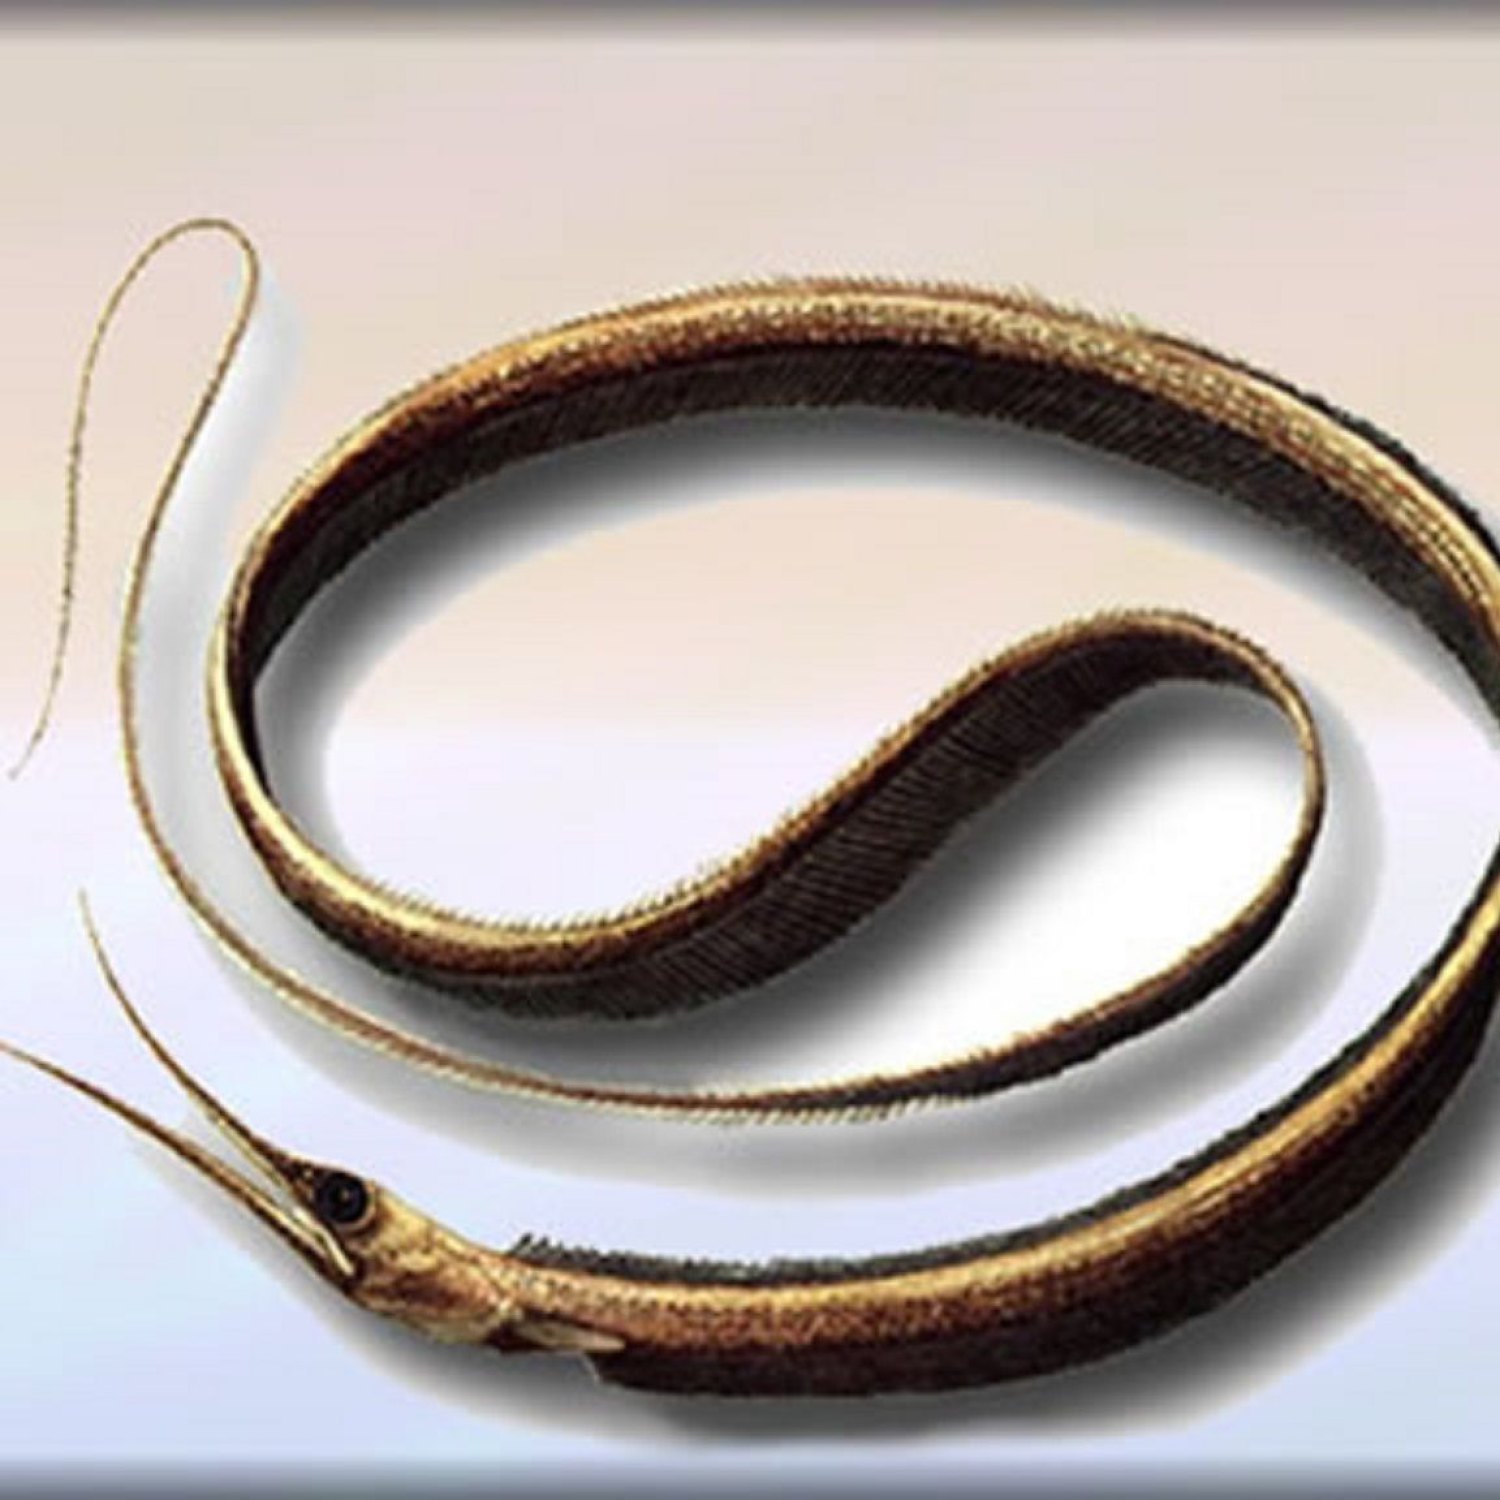 Slender Snipe Eel